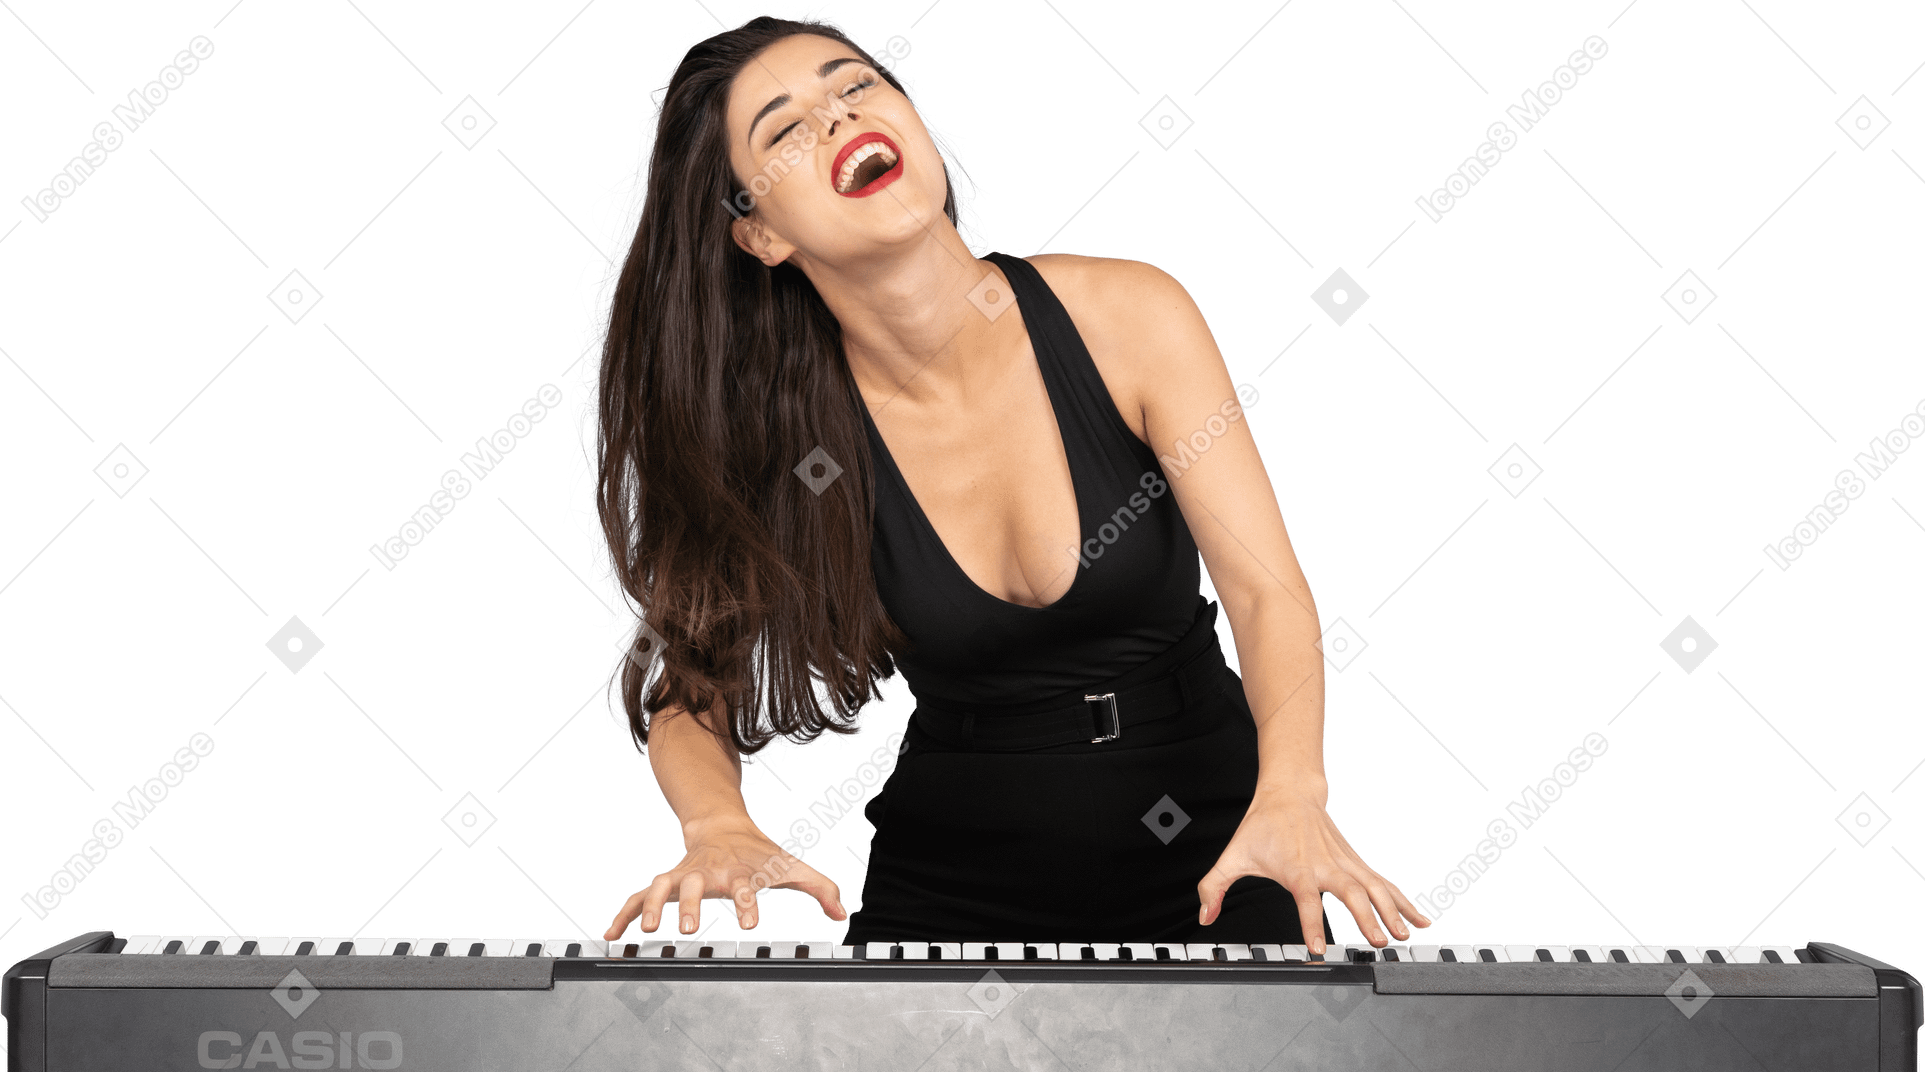 Vista frontal de uma jovem satisfeita em um vestido preto tocando piano enquanto canta